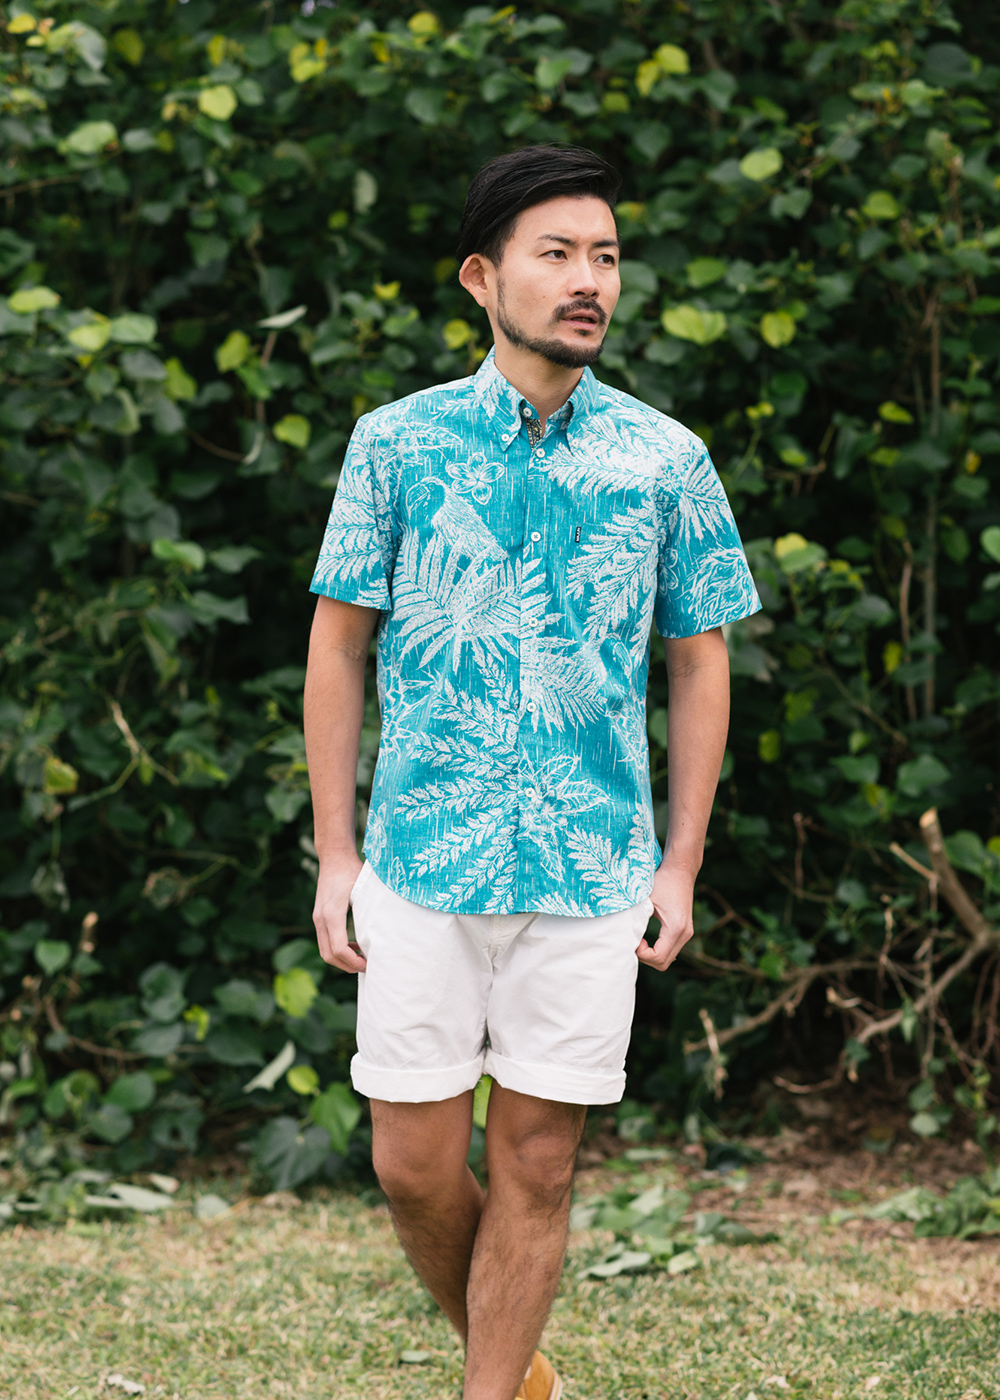 ショップ店員が選ぶバーベキューで着て欲しい メンズ夏ファッション かりゆしウェア 沖縄版アロハシャツ 専門店 Majun